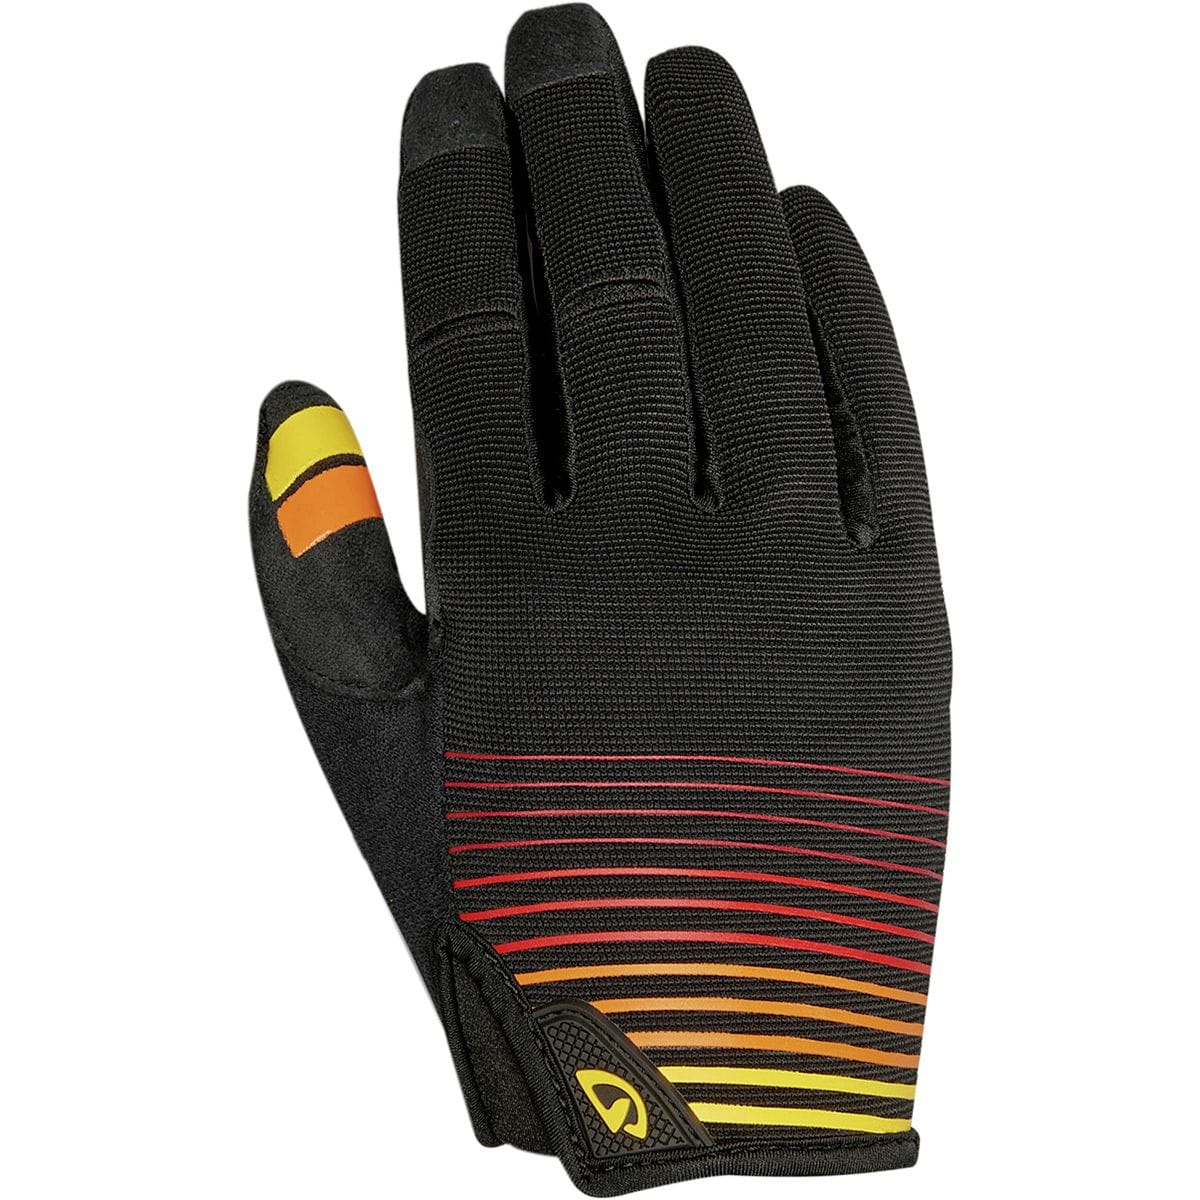 Giro DND Glove - Men's Heatwave/Black, XXL